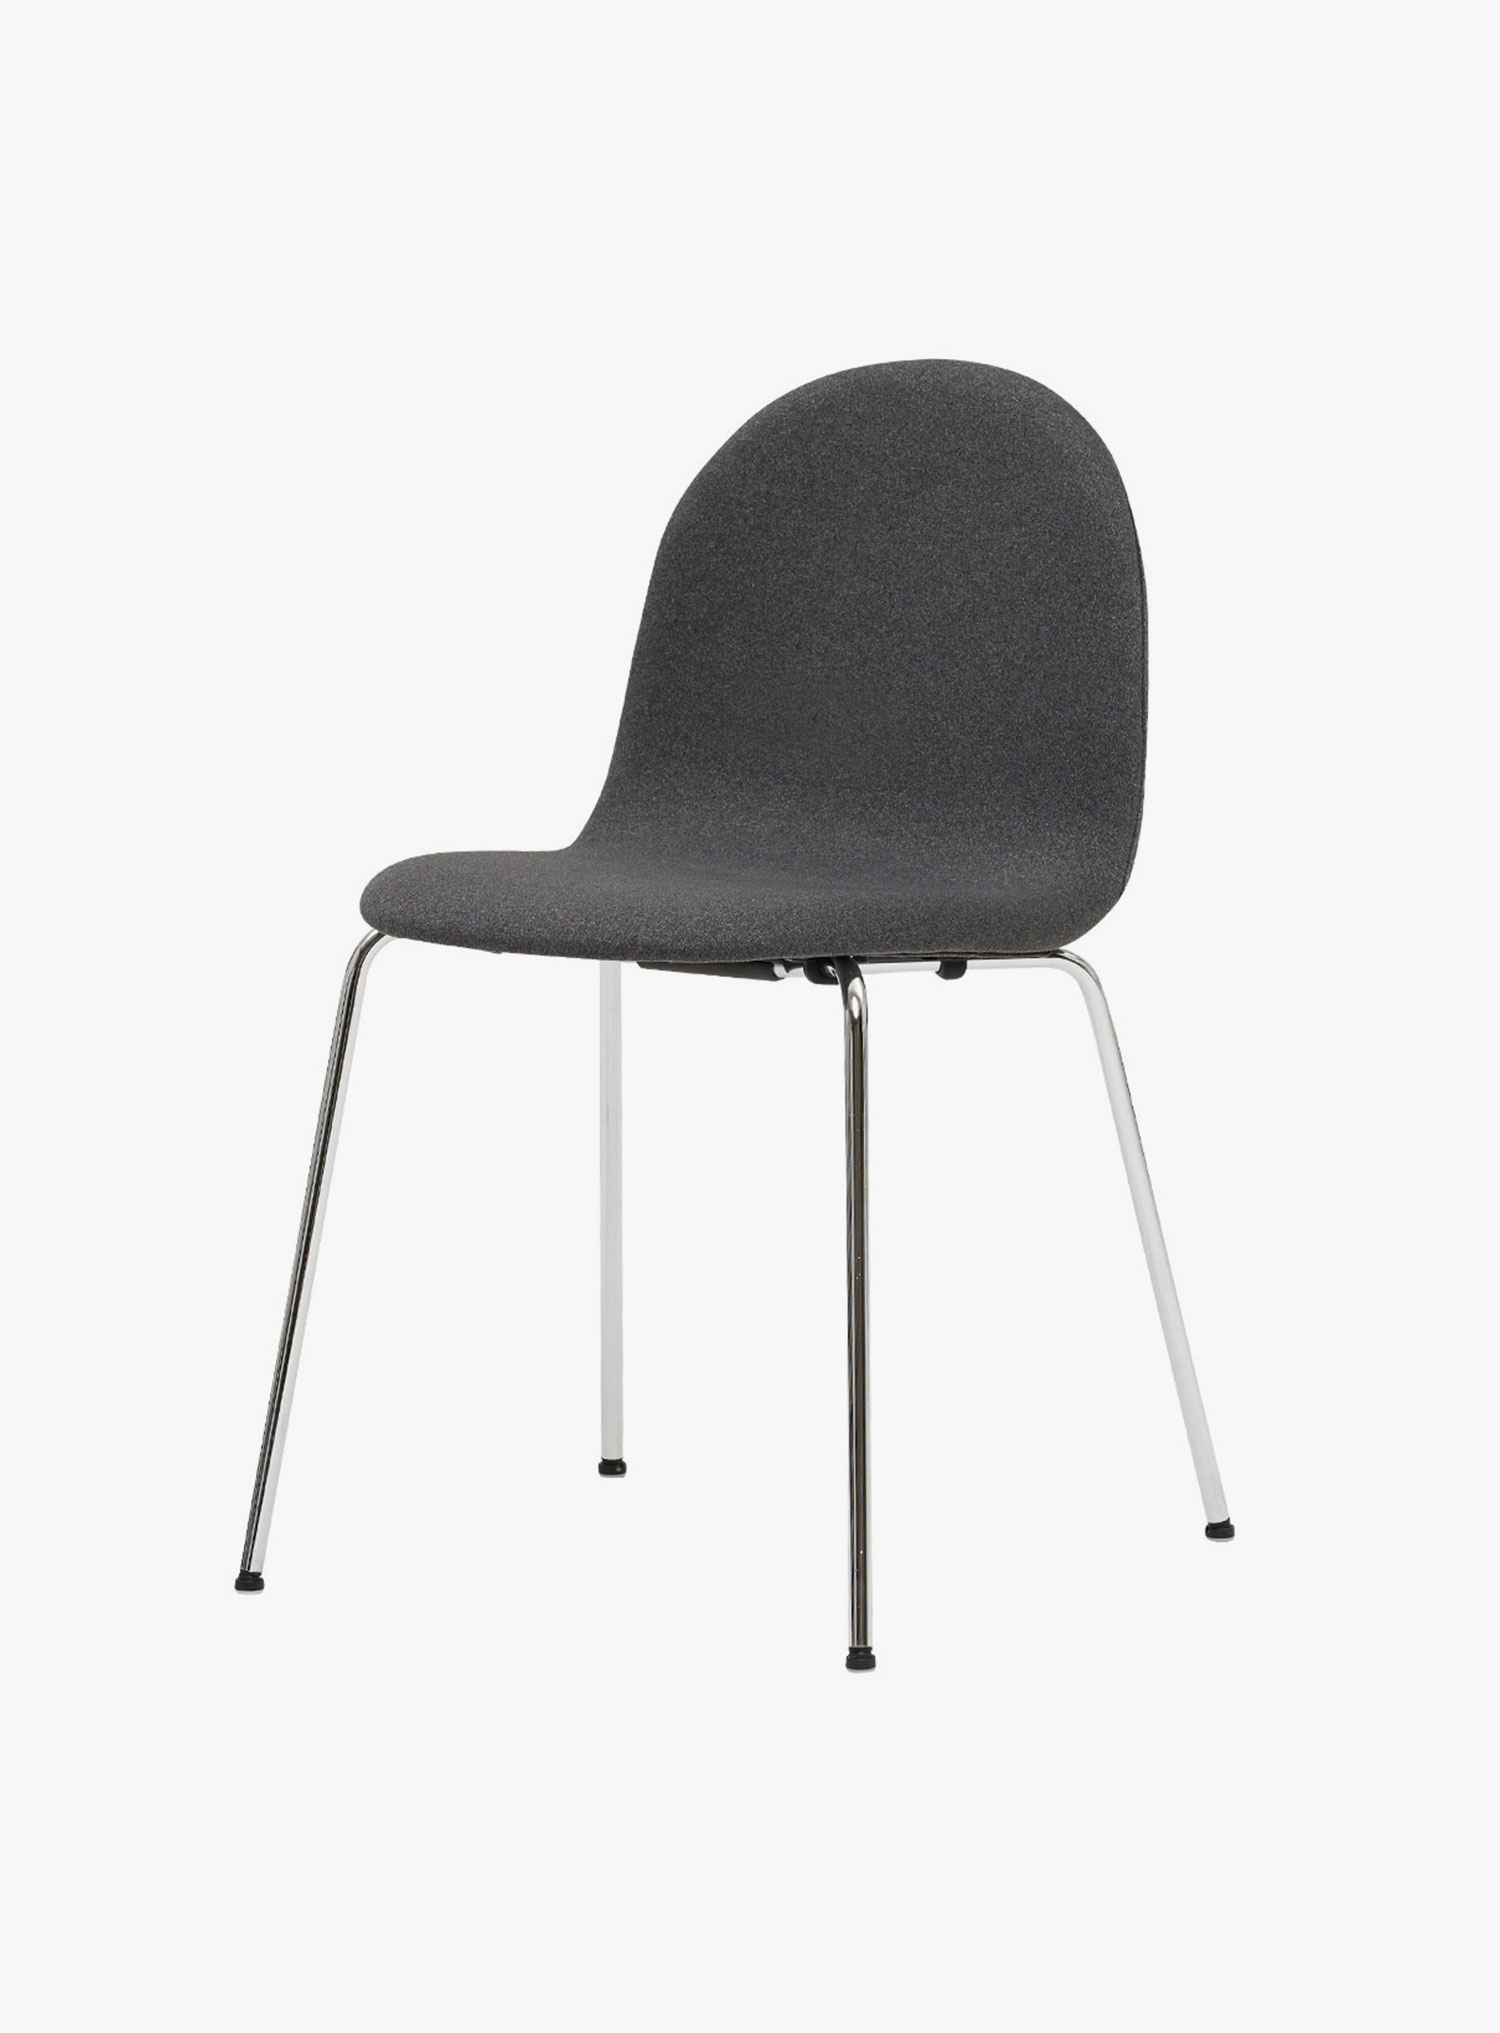 잭슨카멜레온 - Petalo Chair Fabric 크롬/딥그레이ㅣC143